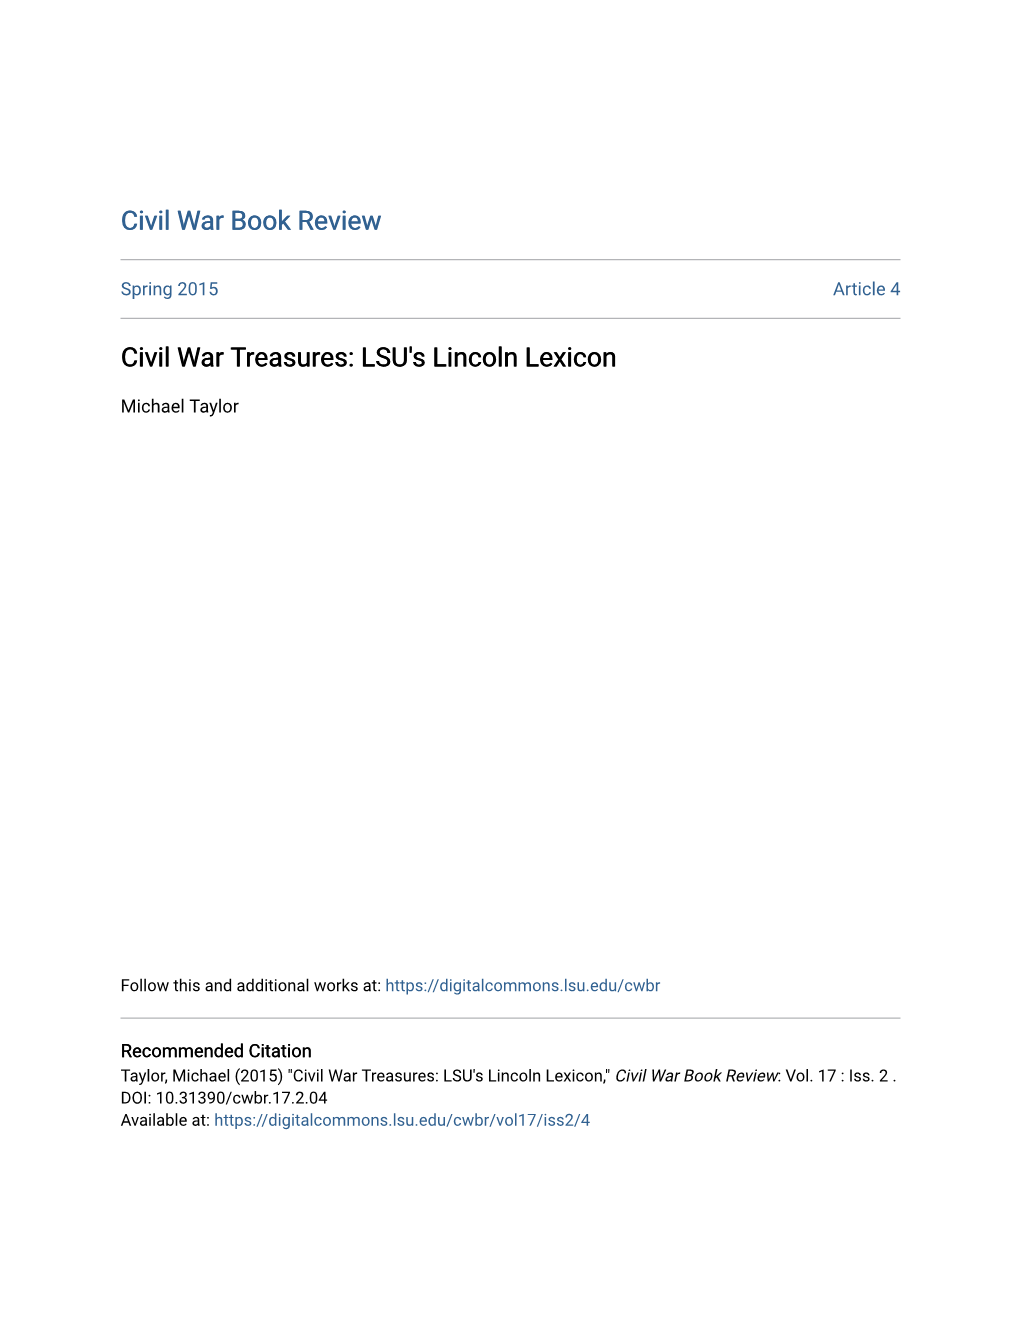 Civil War Treasures: LSU's Lincoln Lexicon